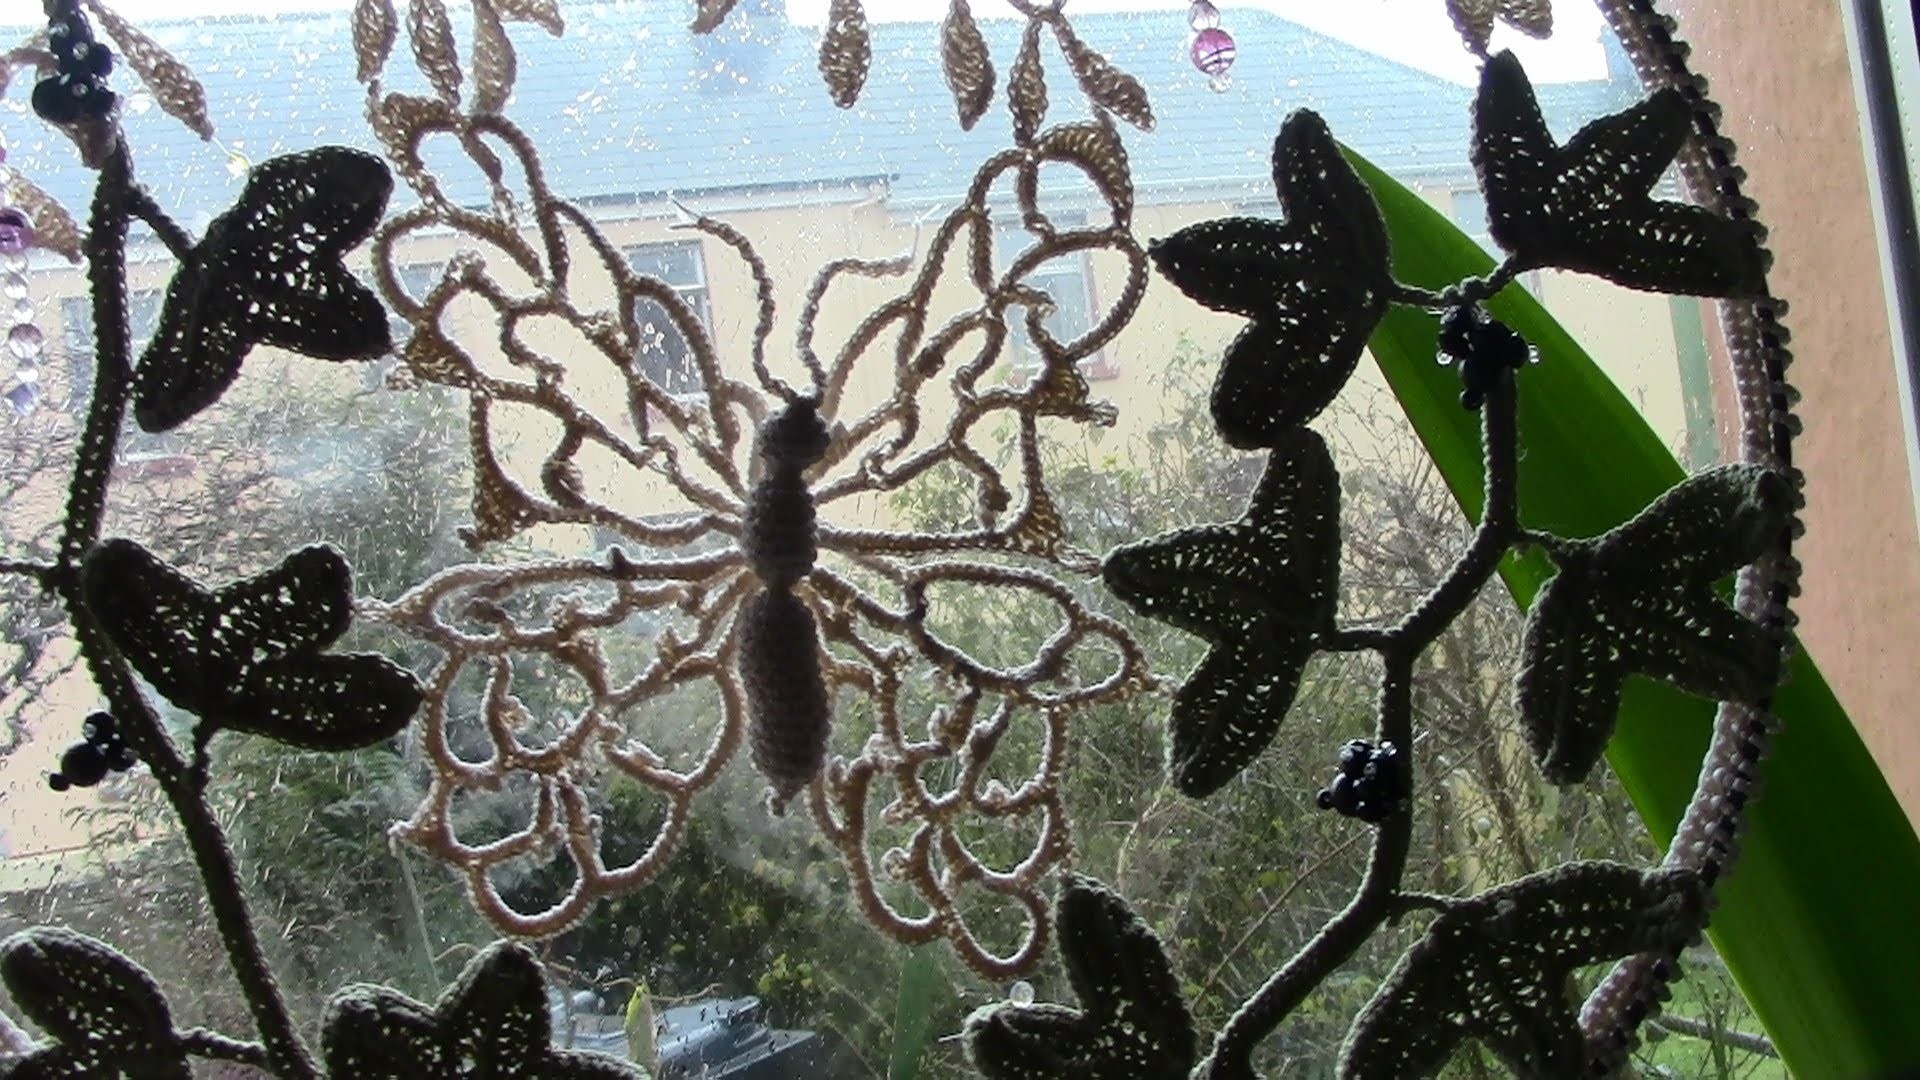 A butterfly Crochet Suncatcher